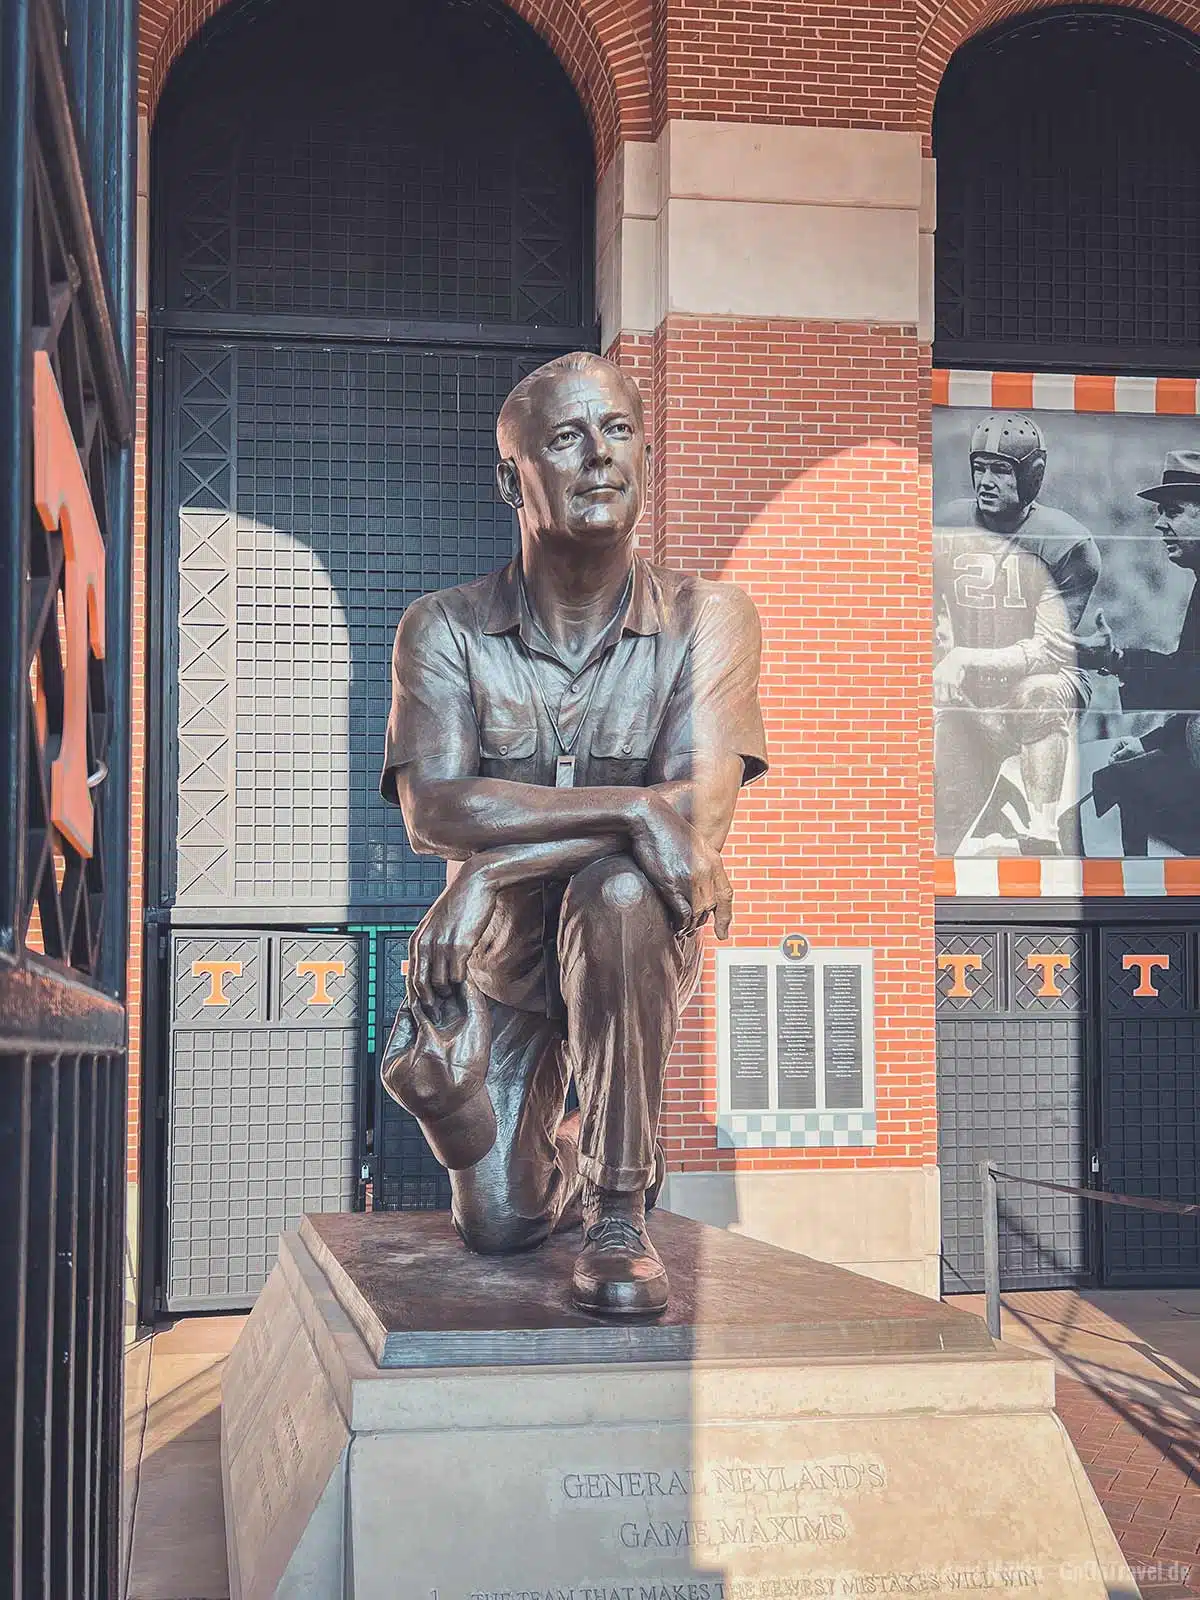 Eine Statue von Robert Neyland direkt vor dem Stadion